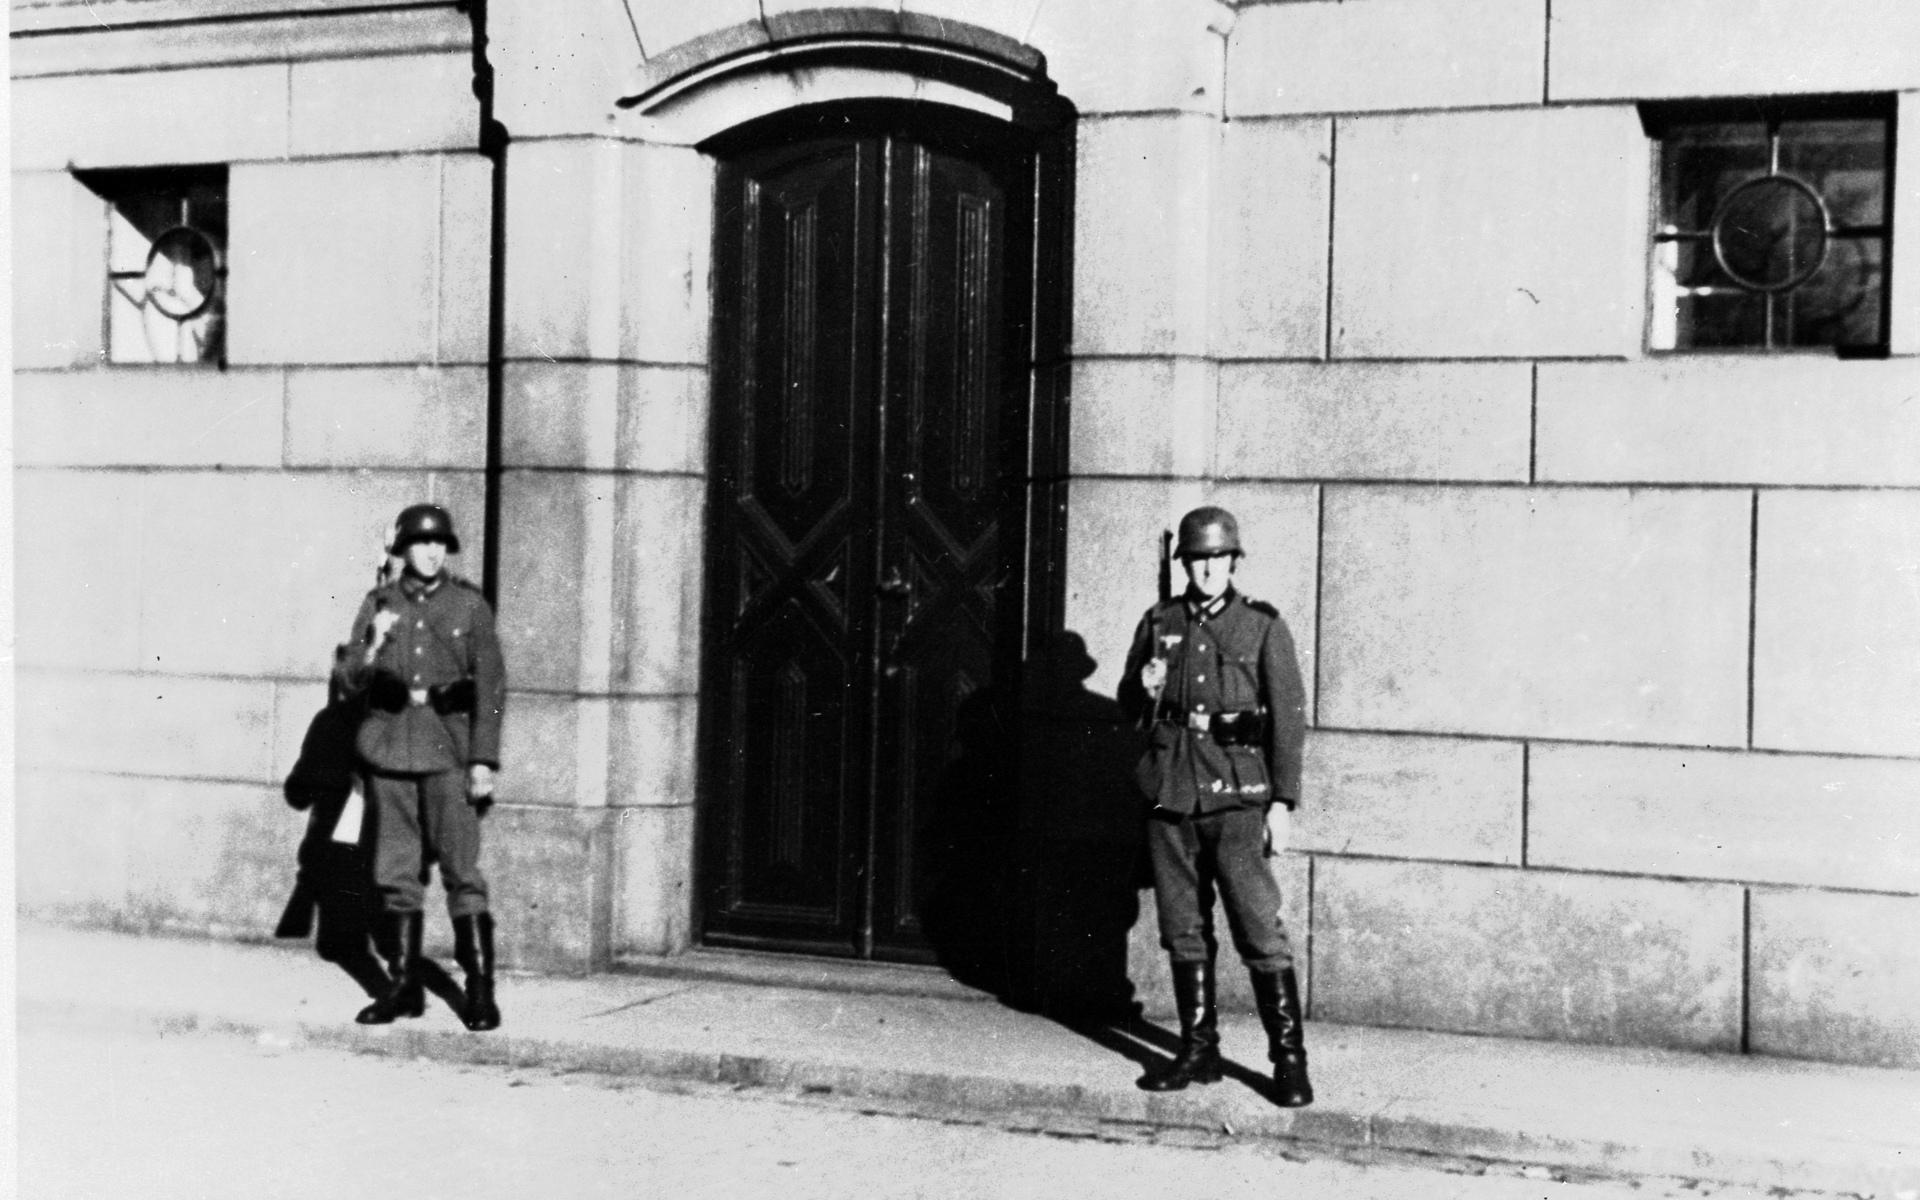  Angreppet den 9 april 1940. Tyskarna tar över Stortinget.